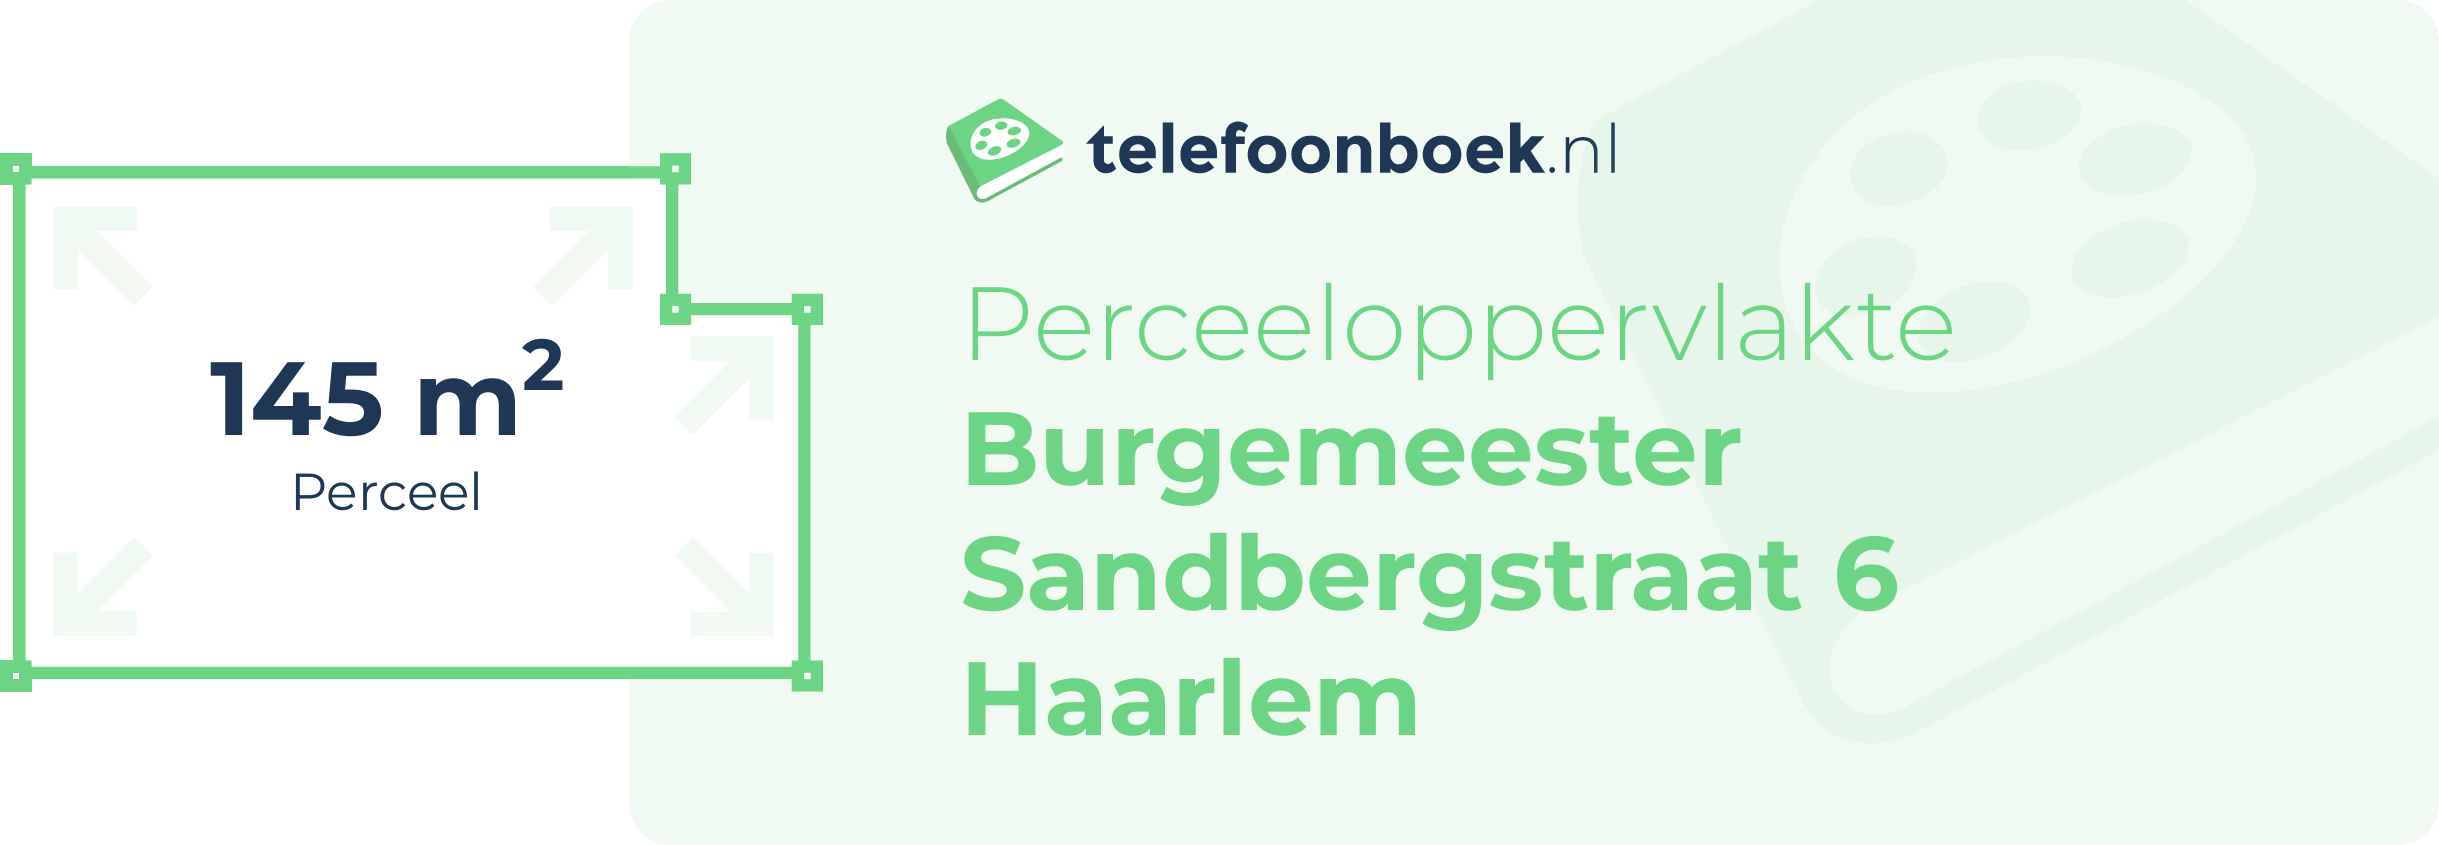 Perceeloppervlakte Burgemeester Sandbergstraat 6 Haarlem